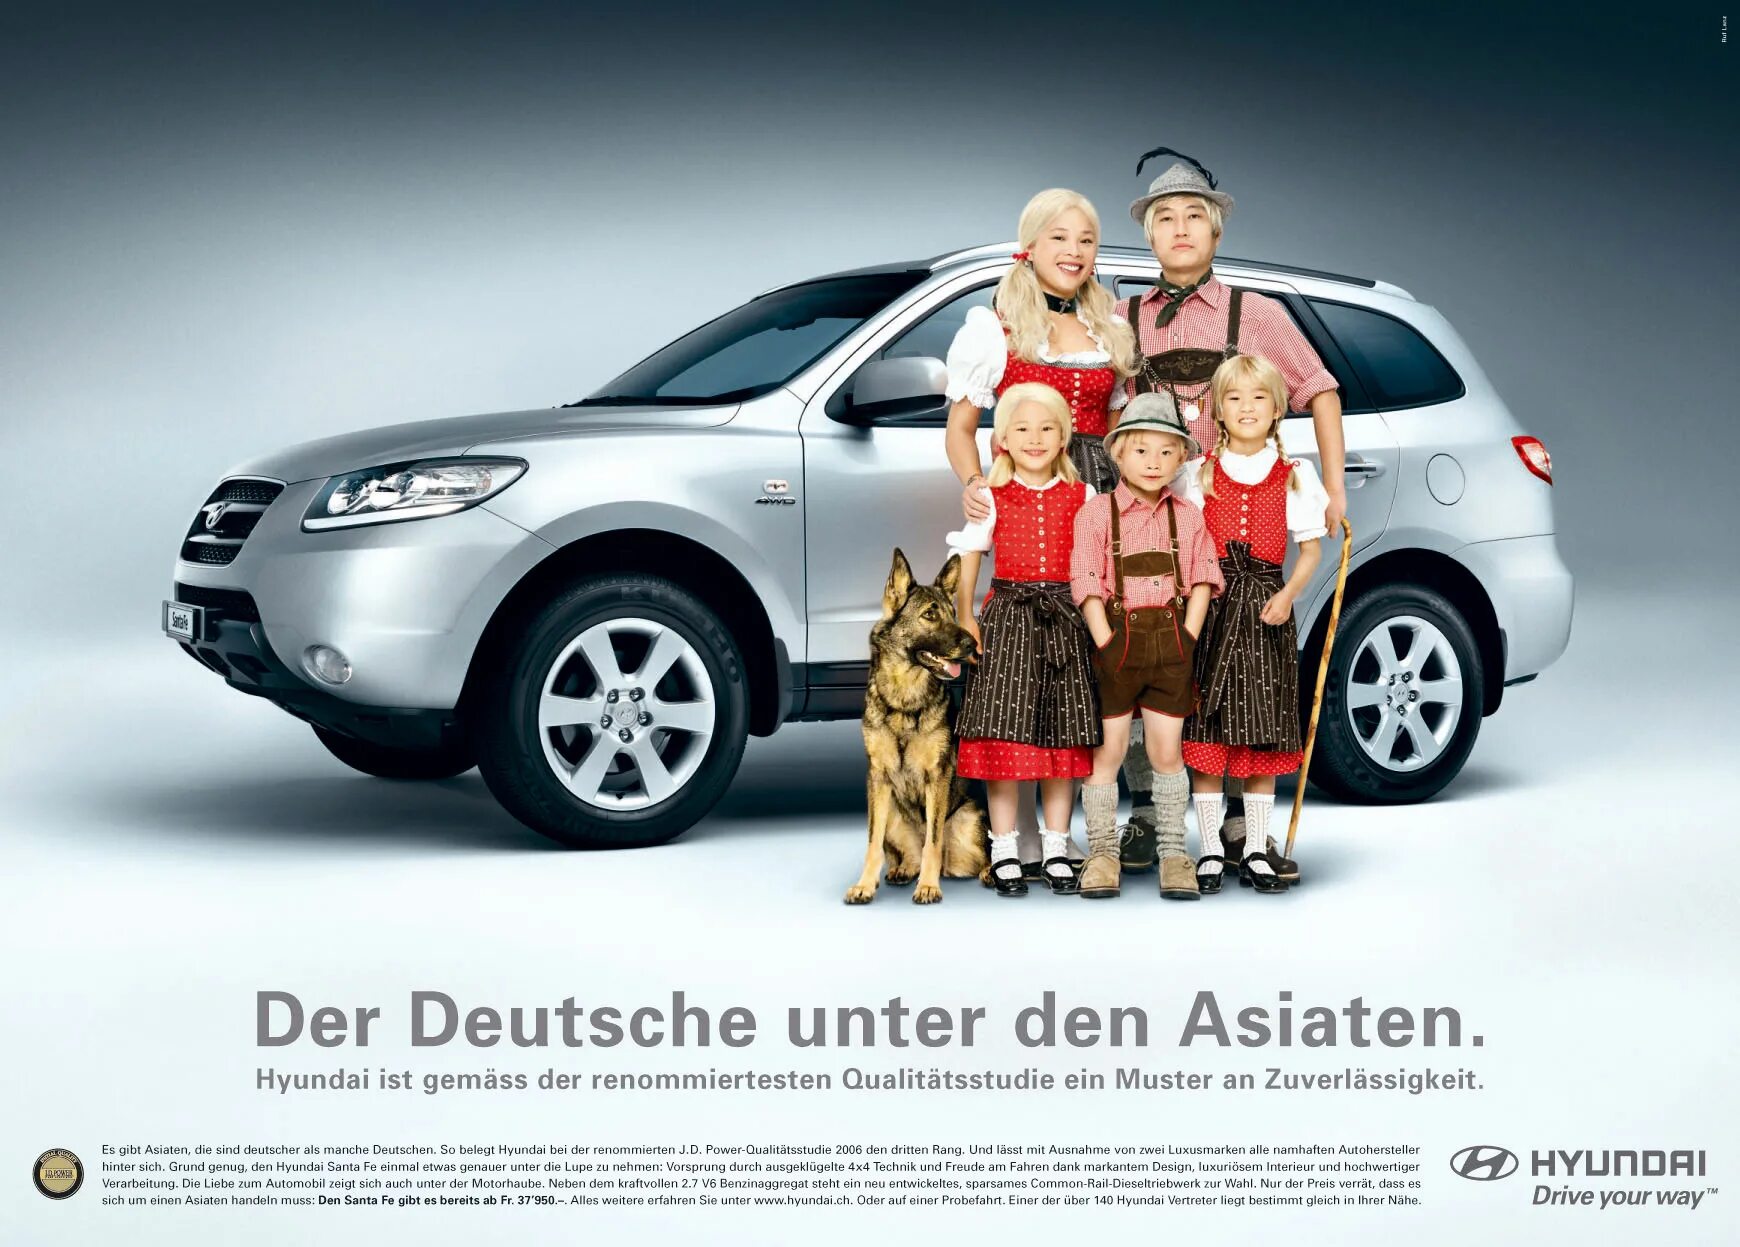 Страшная реклама авто. Реклама семейного автомобиля. Реклама машины с семьей. Семья реклама авто. Реклама Hyundai.